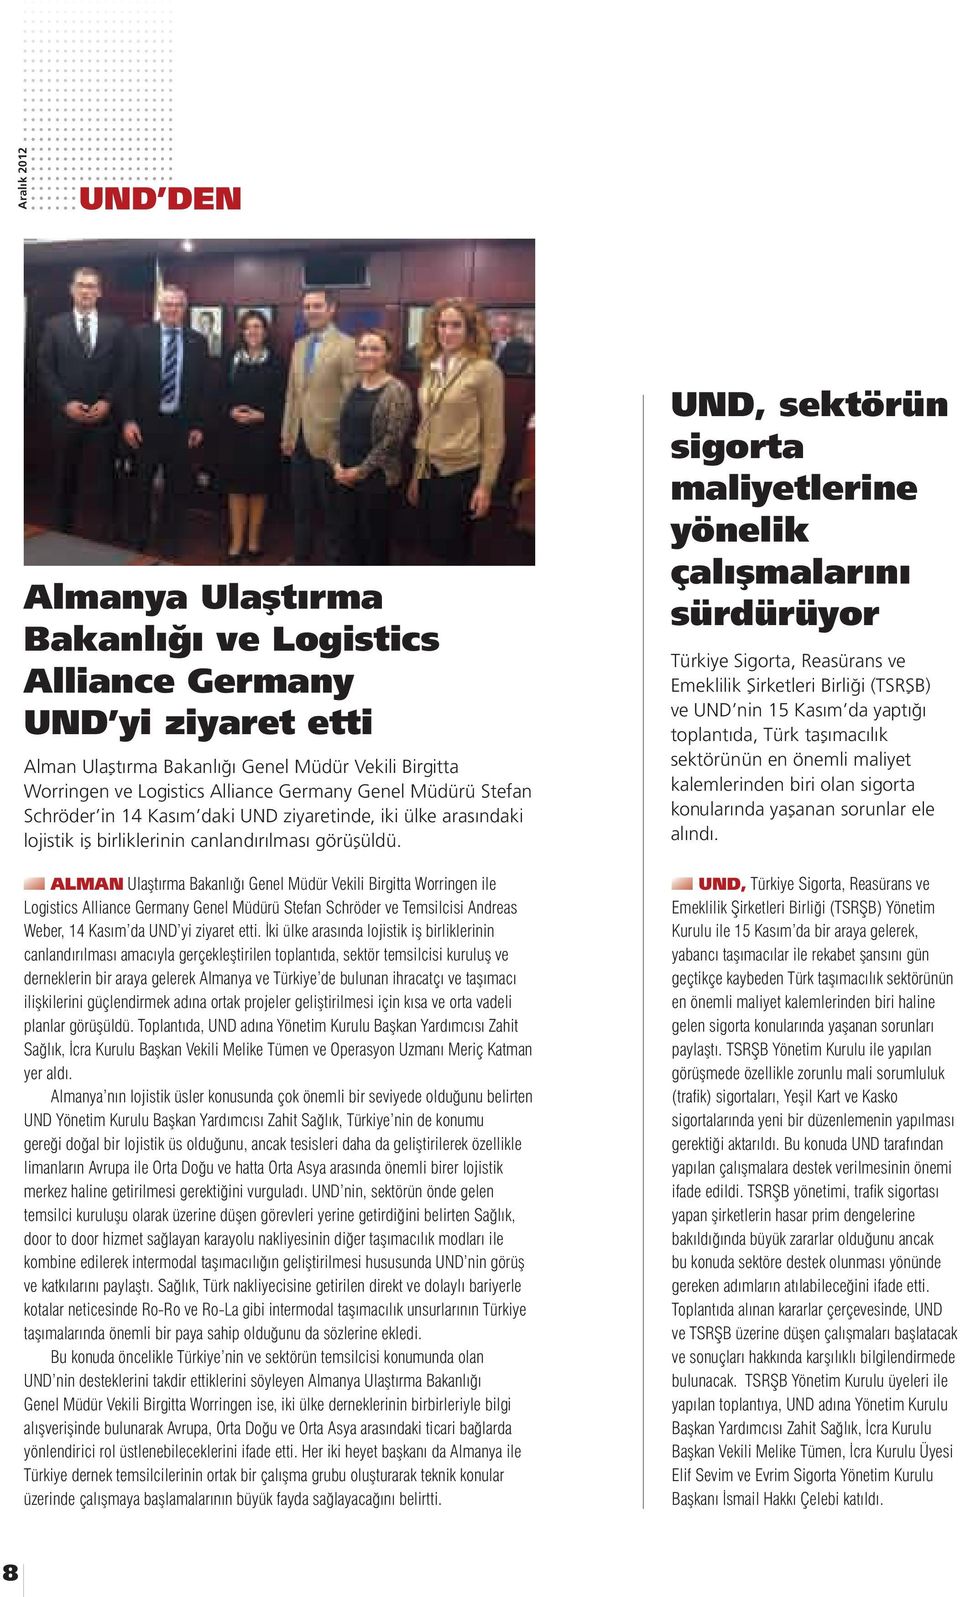 ALMAN Ulaştırma Bakanlığı Genel Müdür Vekili Birgitta Worringen ile Logistics Alliance Germany Genel Müdürü Stefan Schröder ve Temsilcisi Andreas Weber, 14 Kasım da UND yi ziyaret etti.